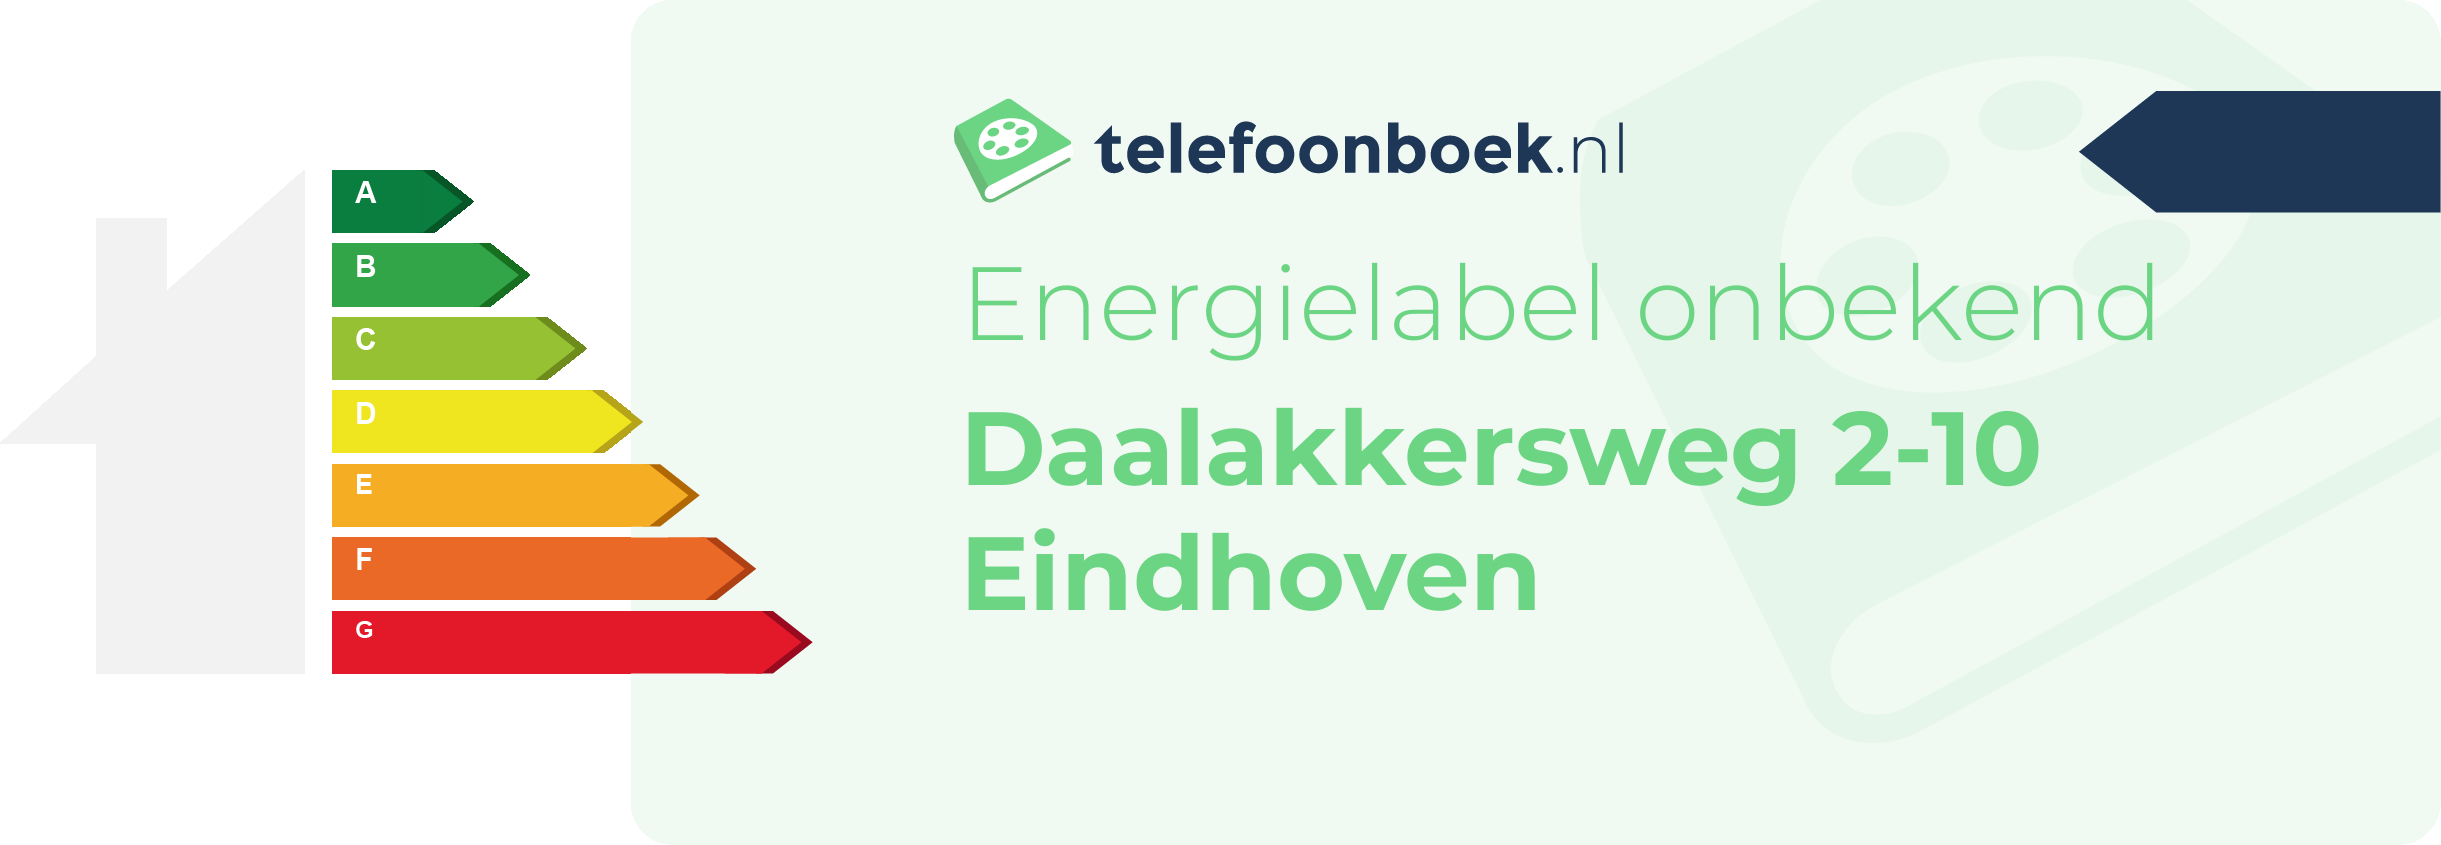 Energielabel Daalakkersweg 2-10 Eindhoven